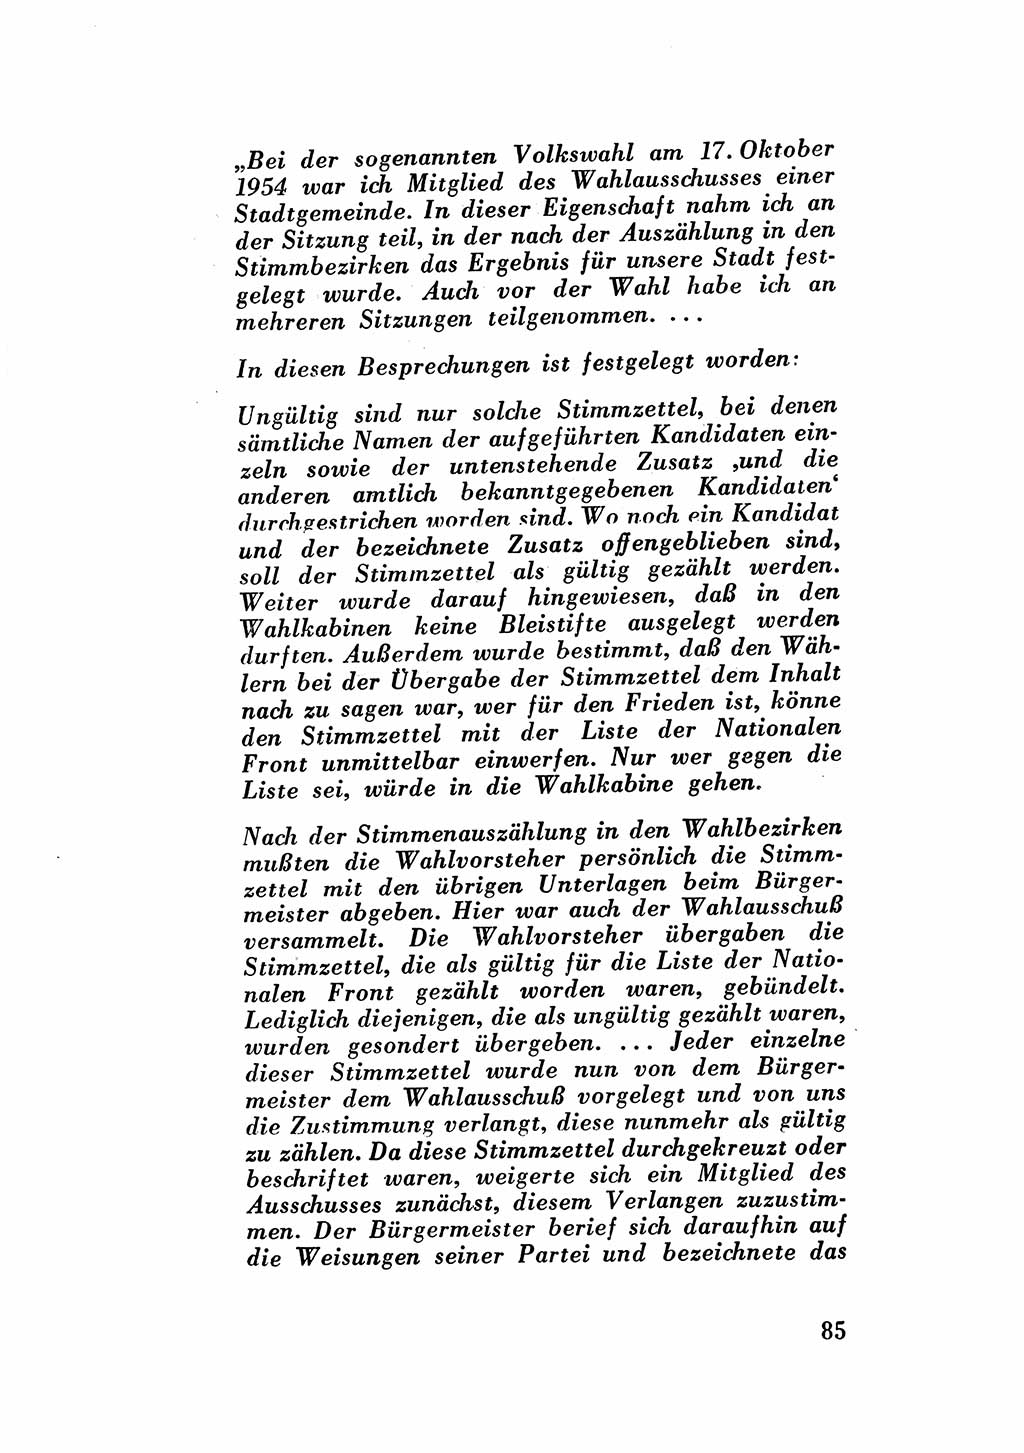 Katalog des Unrechts, Untersuchungsausschuß Freiheitlicher Juristen (UfJ) [Bundesrepublik Deutschland (BRD)] 1956, Seite 85 (Kat. UnR. UfJ BRD 1956, S. 85)